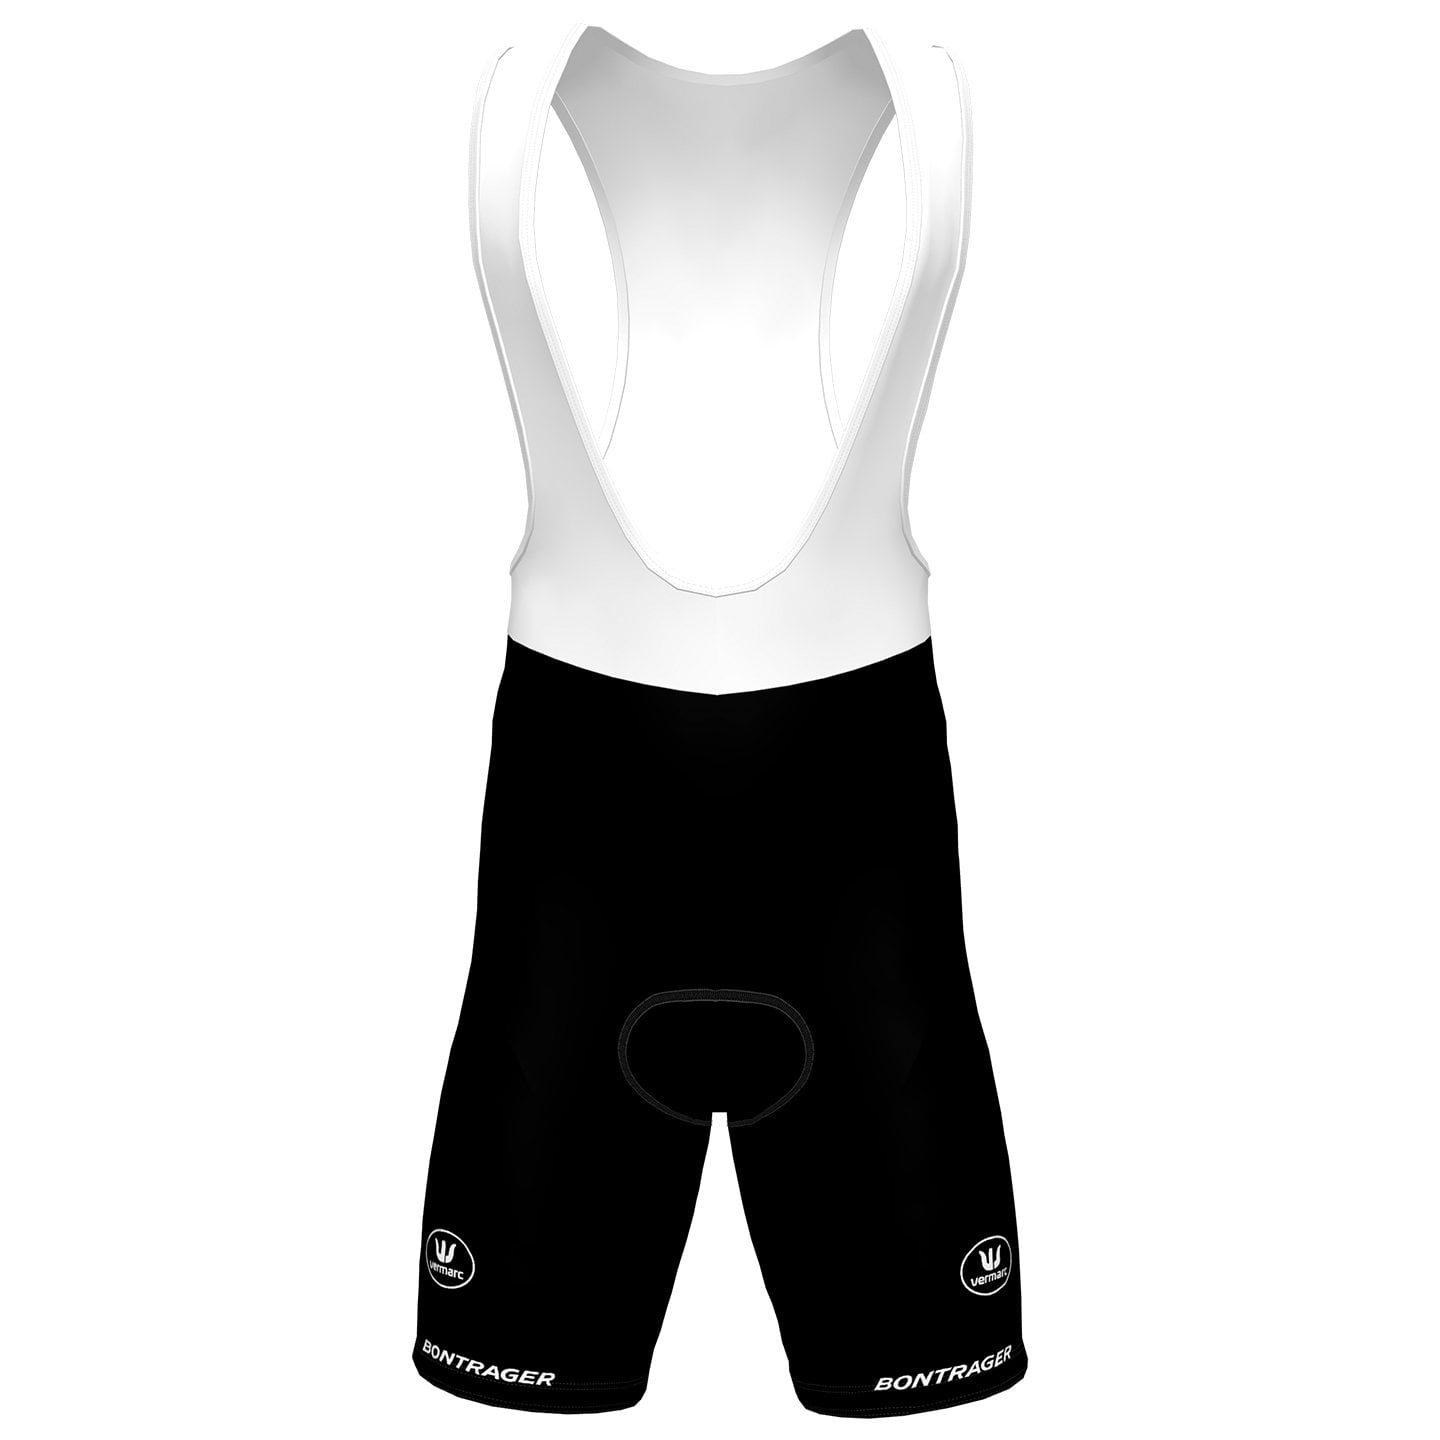 BALOISE TREK LIONS 2023 Bib Shorts, for men, size 2XL, Cycle trousers, Cycle gear